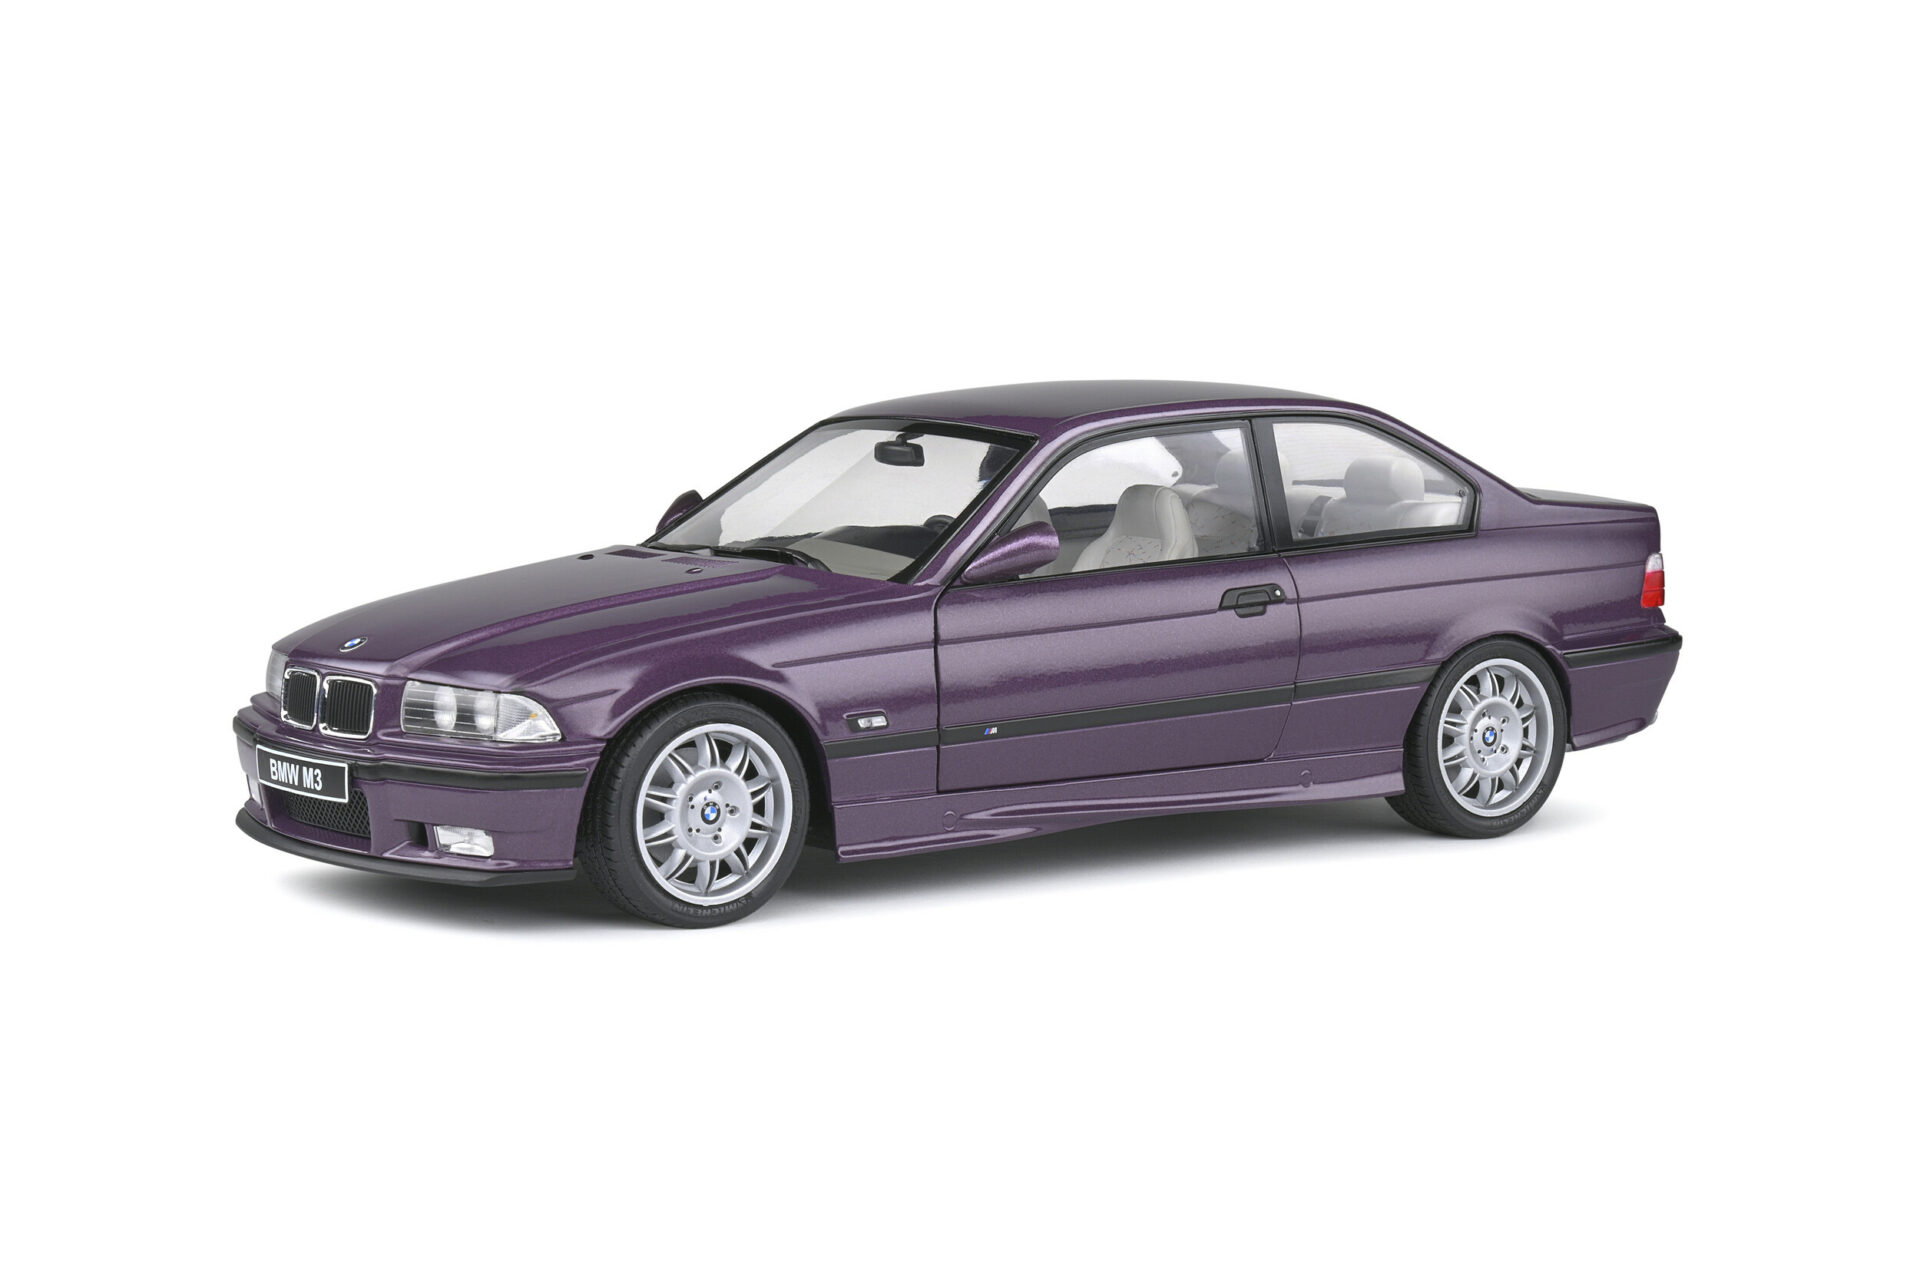 Solido S1803905 BMW E36 M3 coupe purple 1:18 scale diecast model